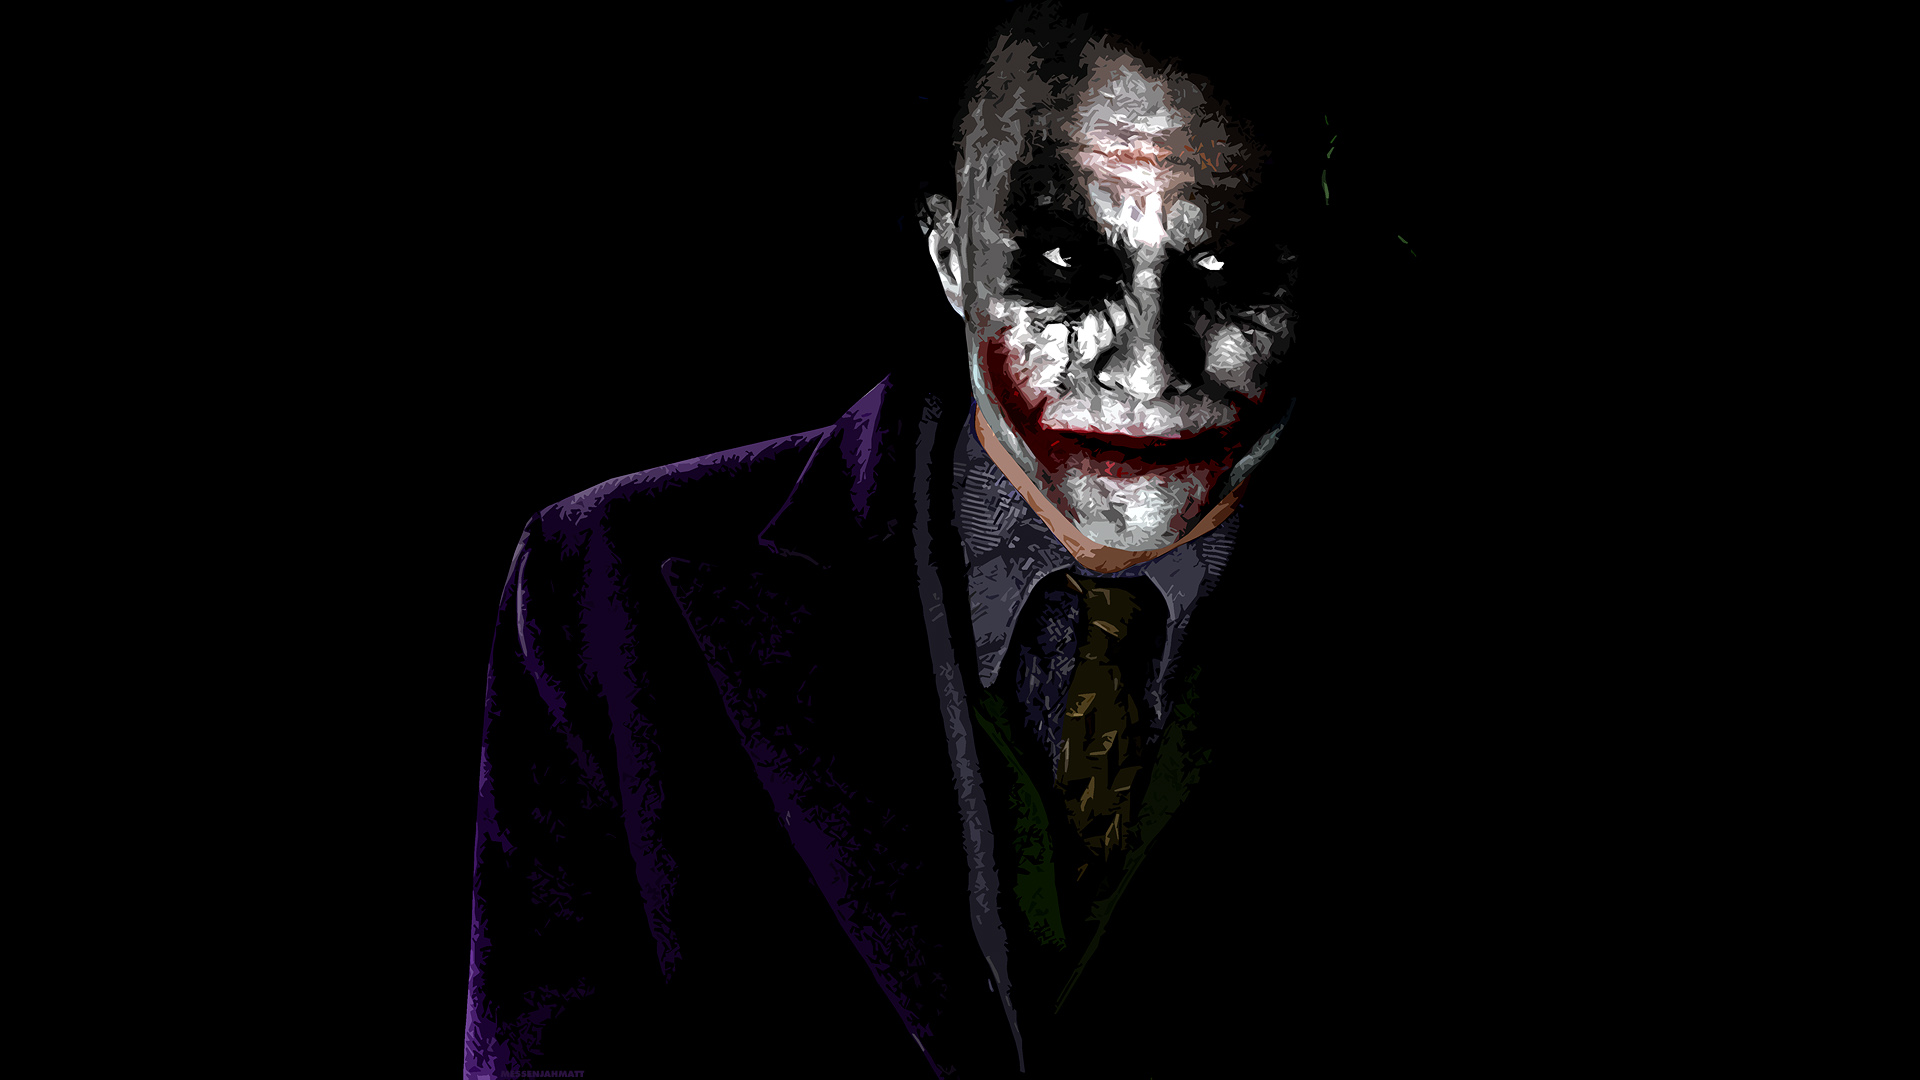 Joker The Wallpaper